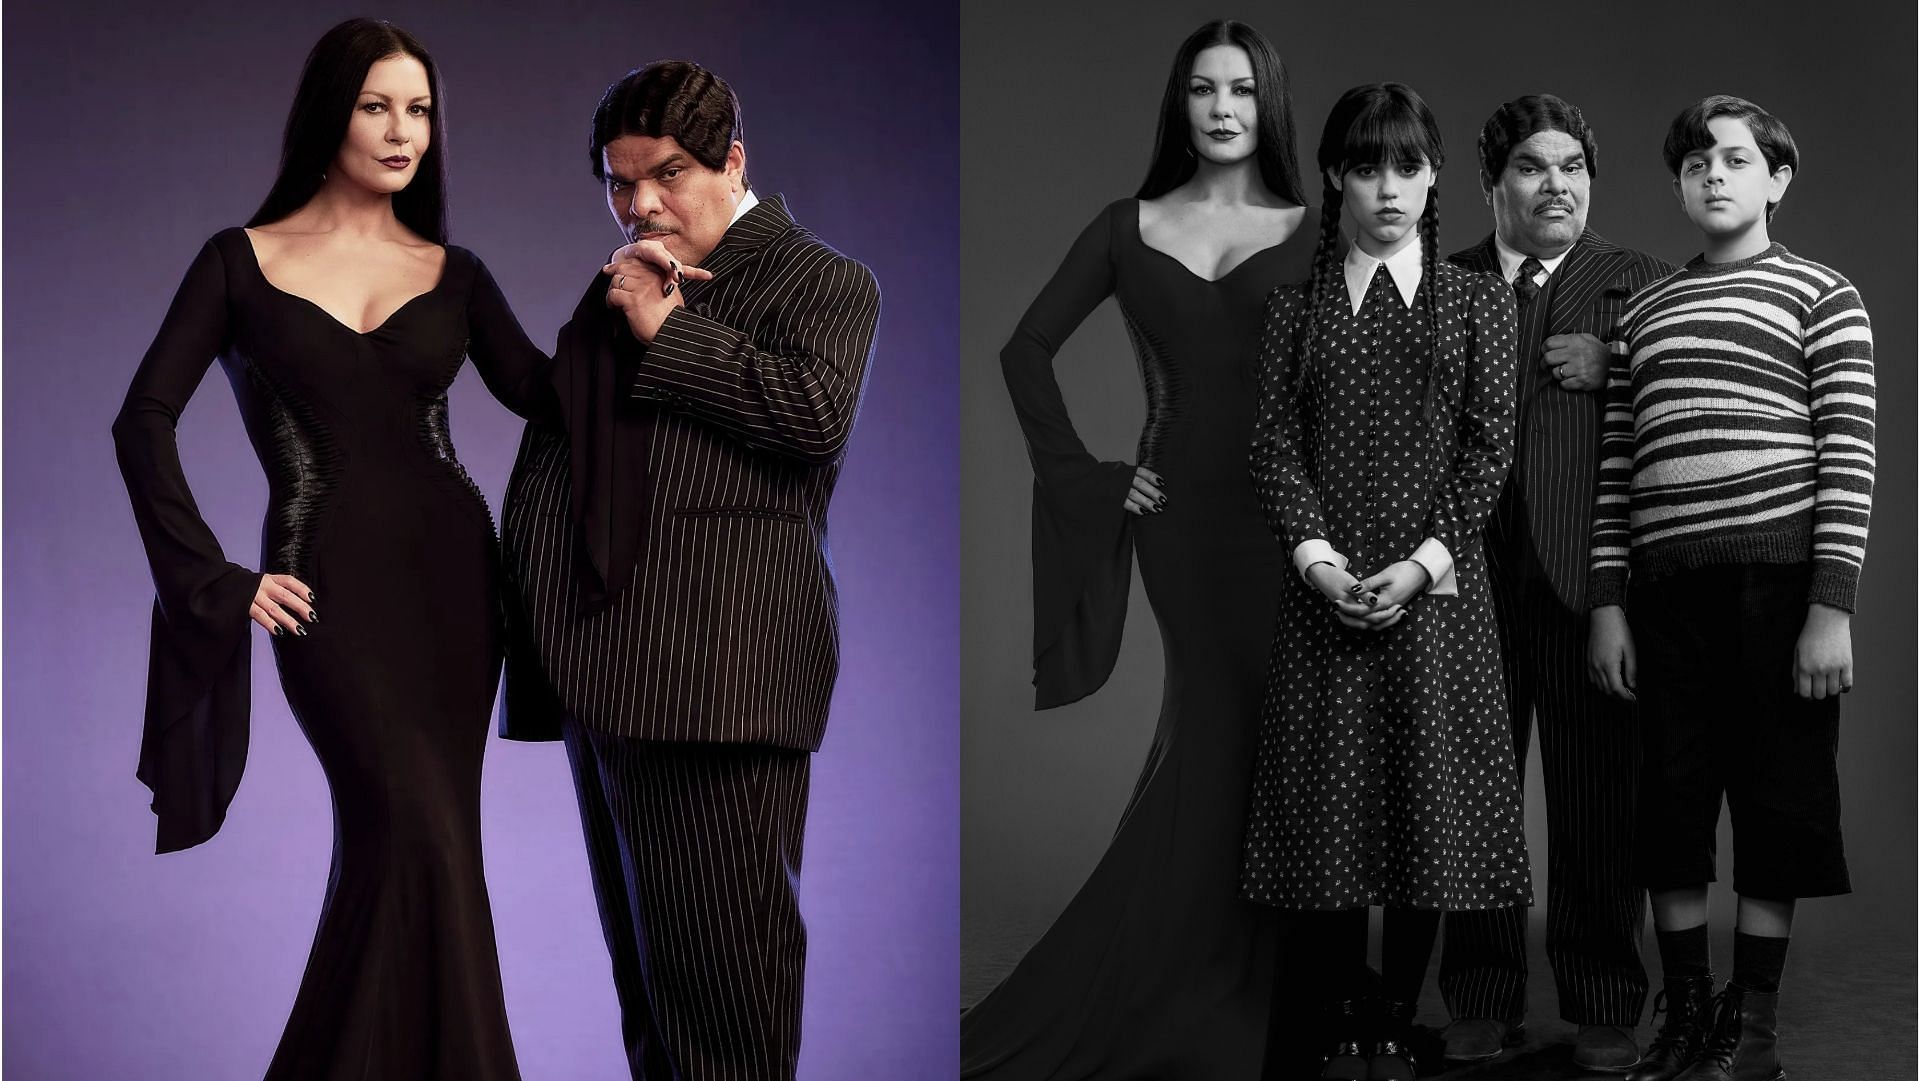 Wednesday: Luis Guzmán cast as Gomez Addams in Netflix series